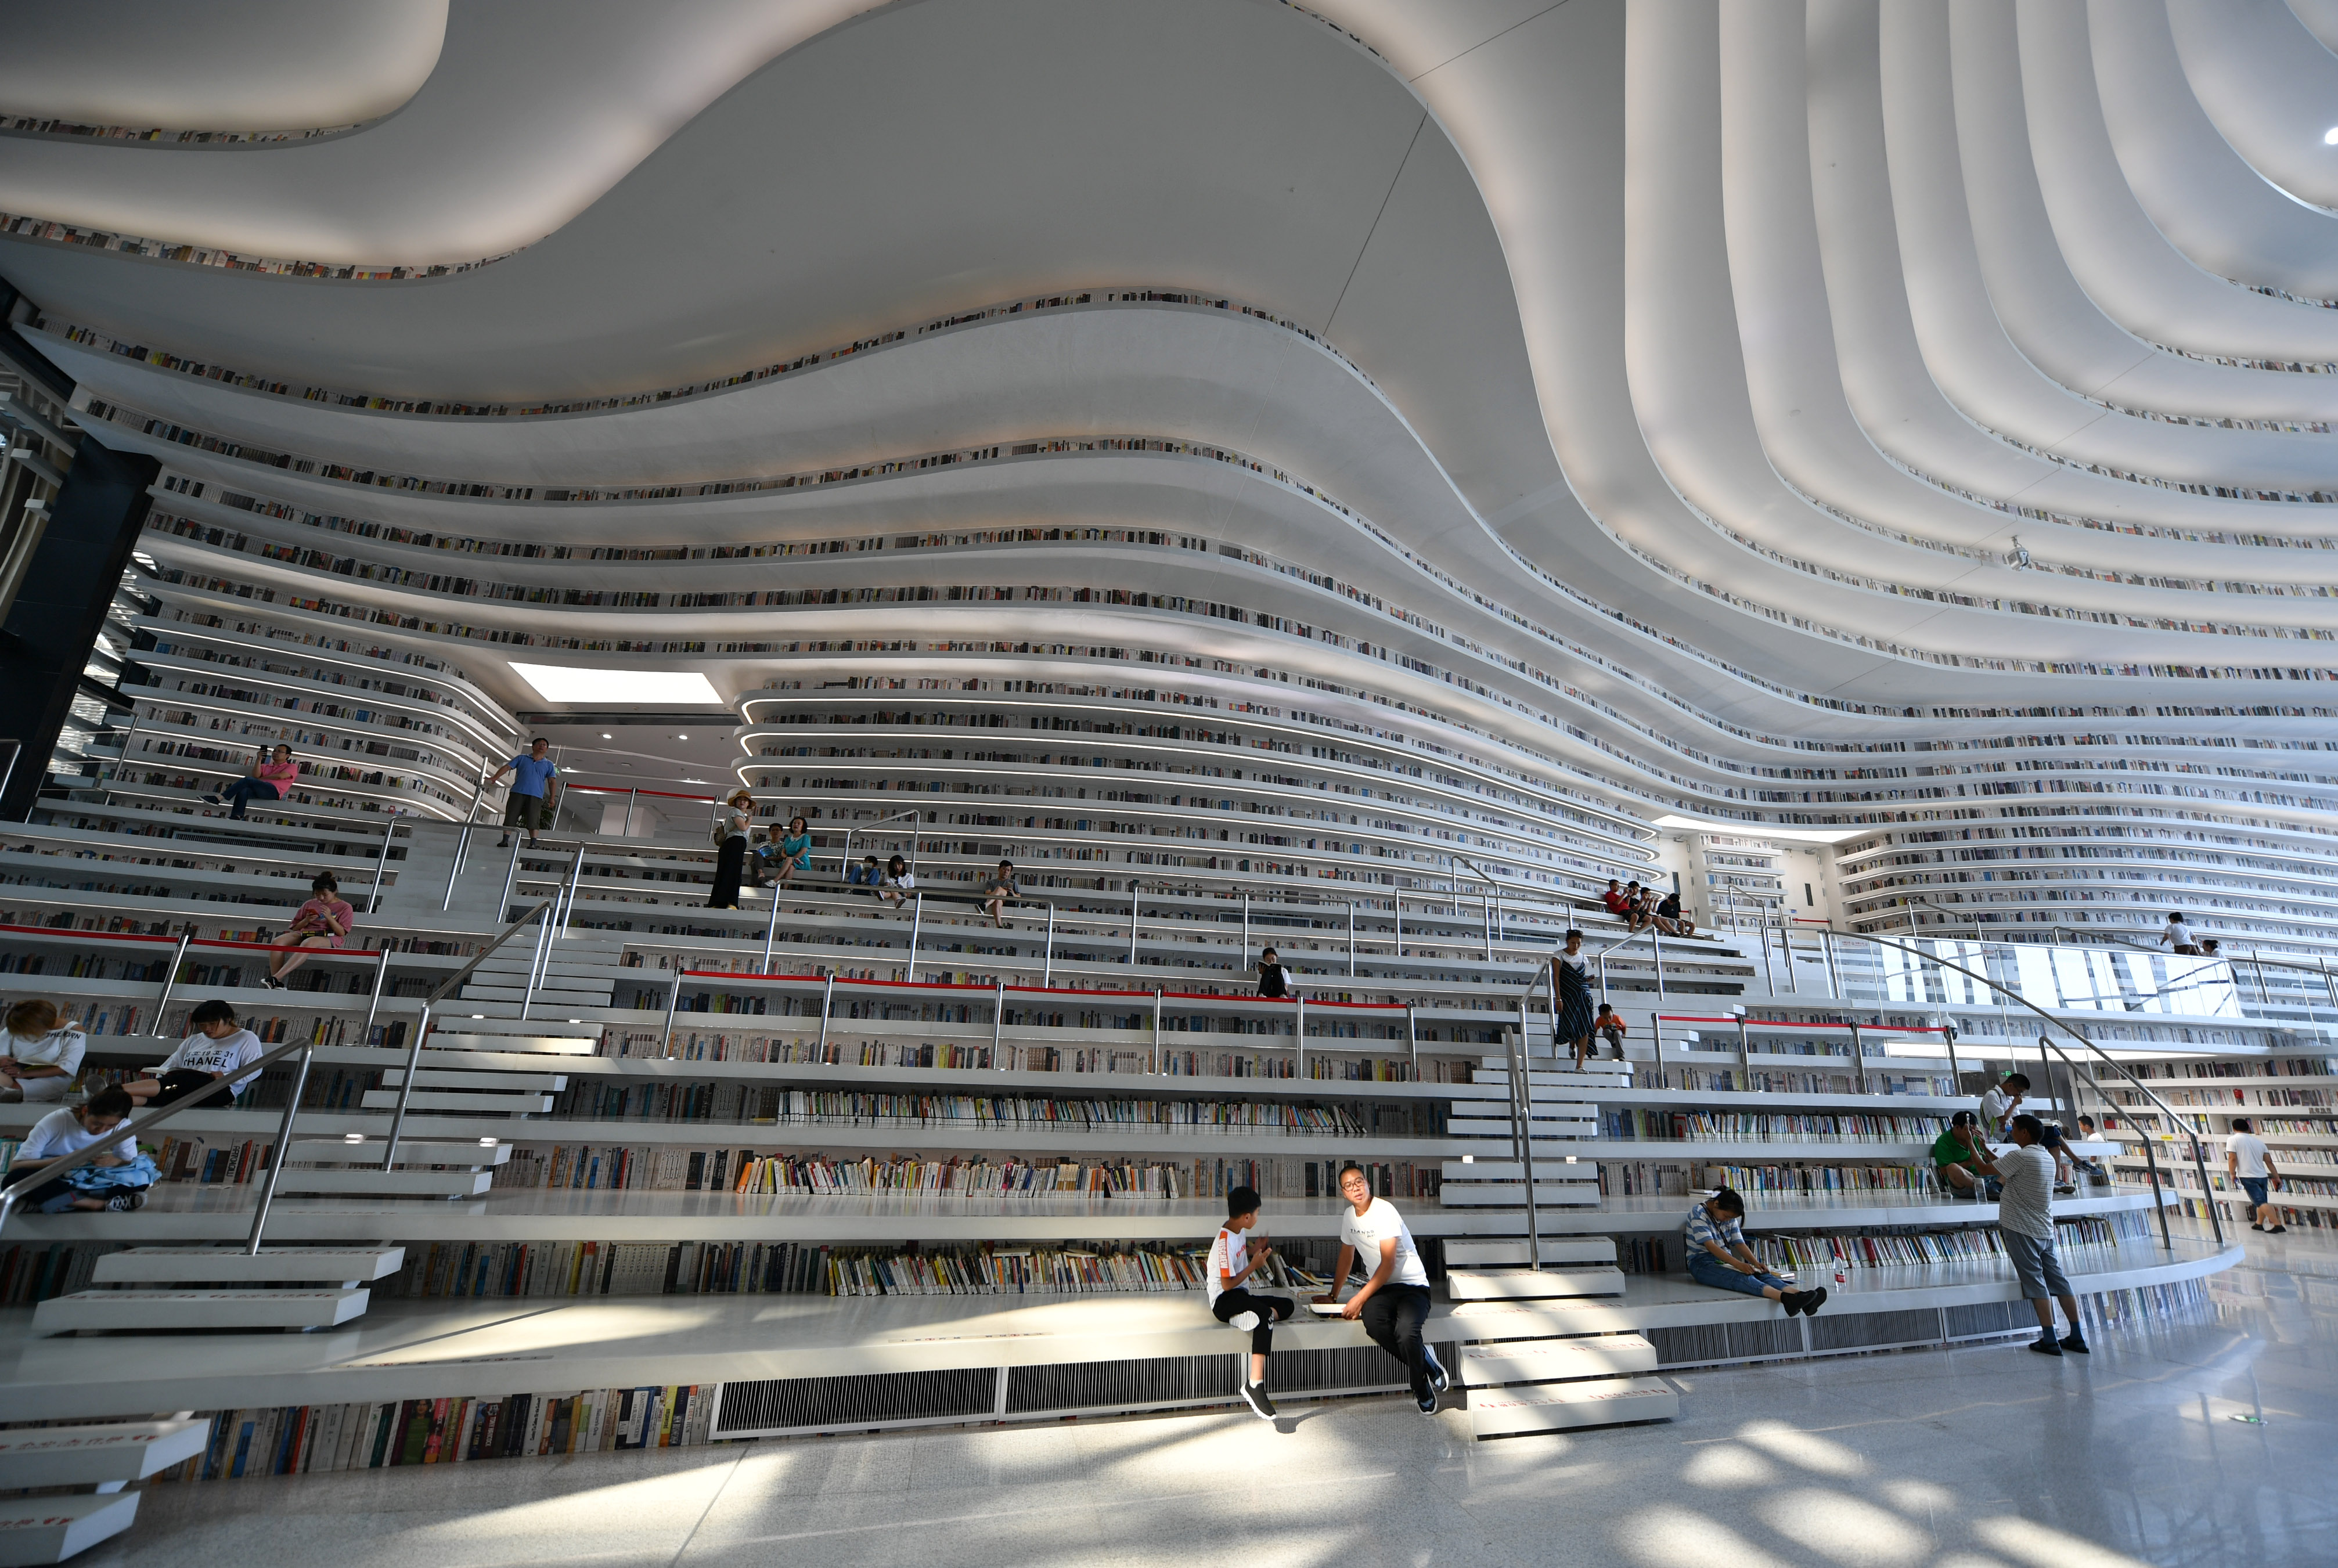 这是天津滨海新区图书馆一景(7月31日摄)